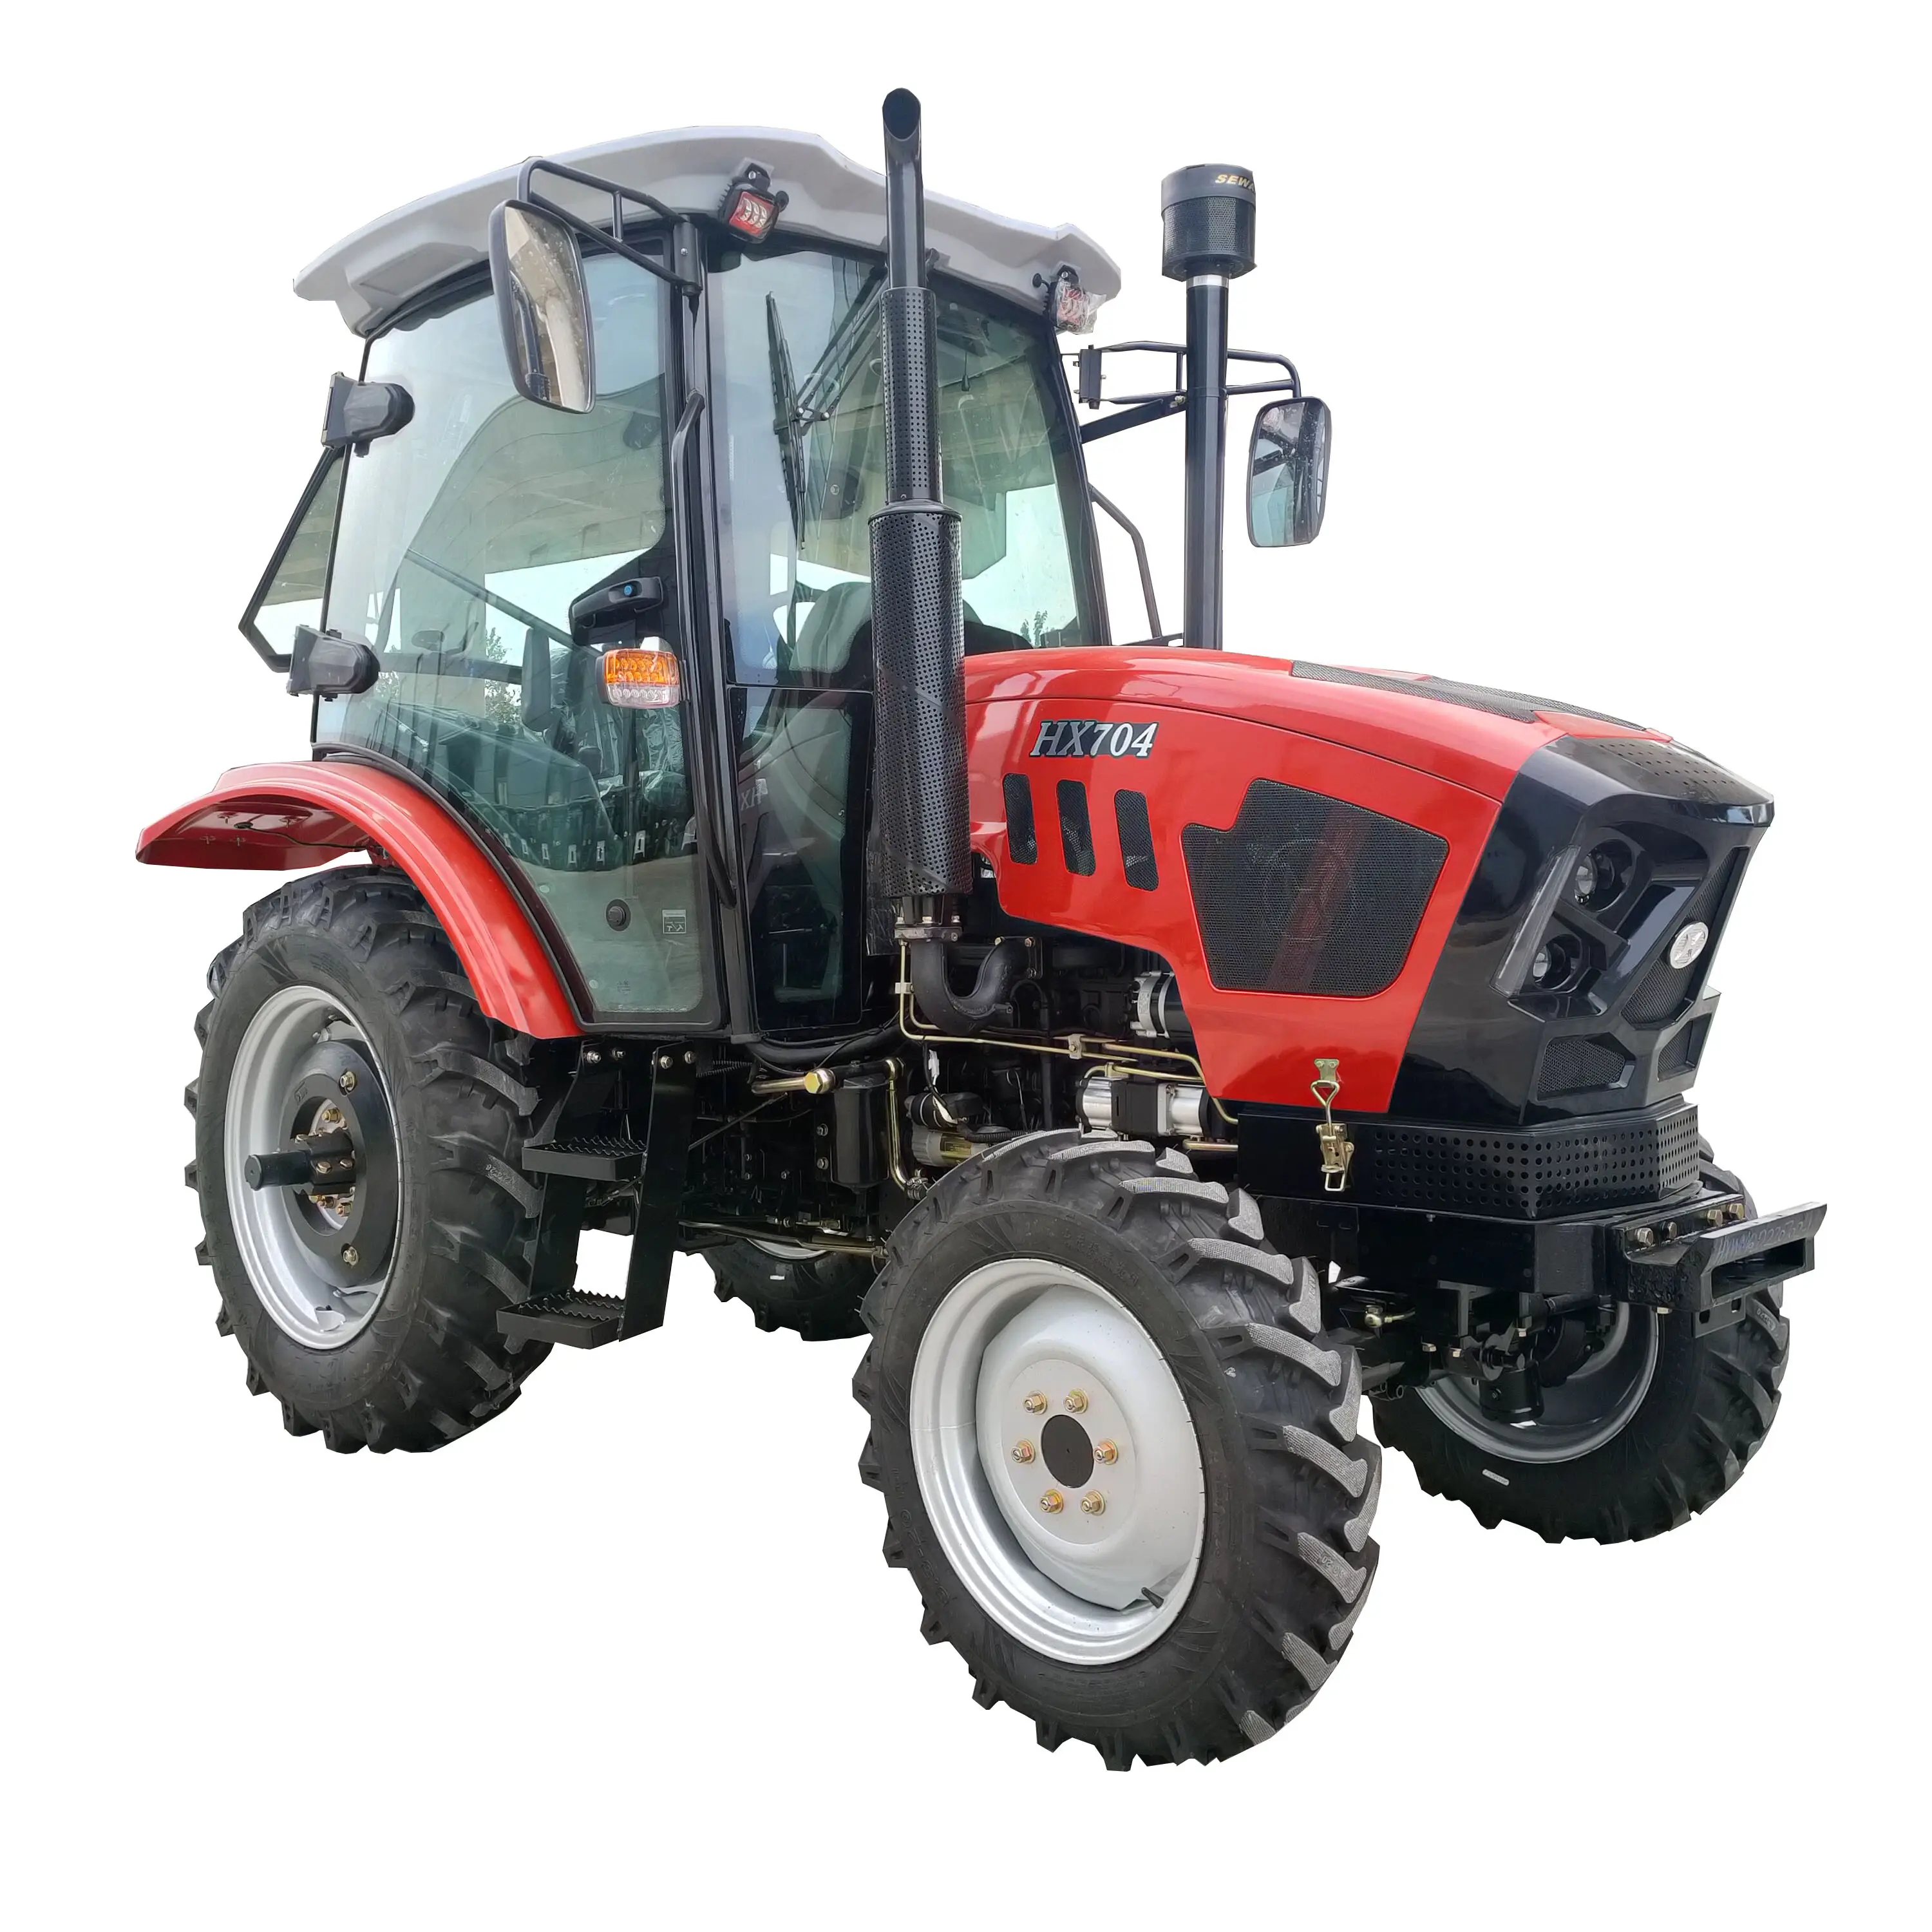 Высококачественный кузовой трактор HP604 Huabo 50-80hp, трактор для газона